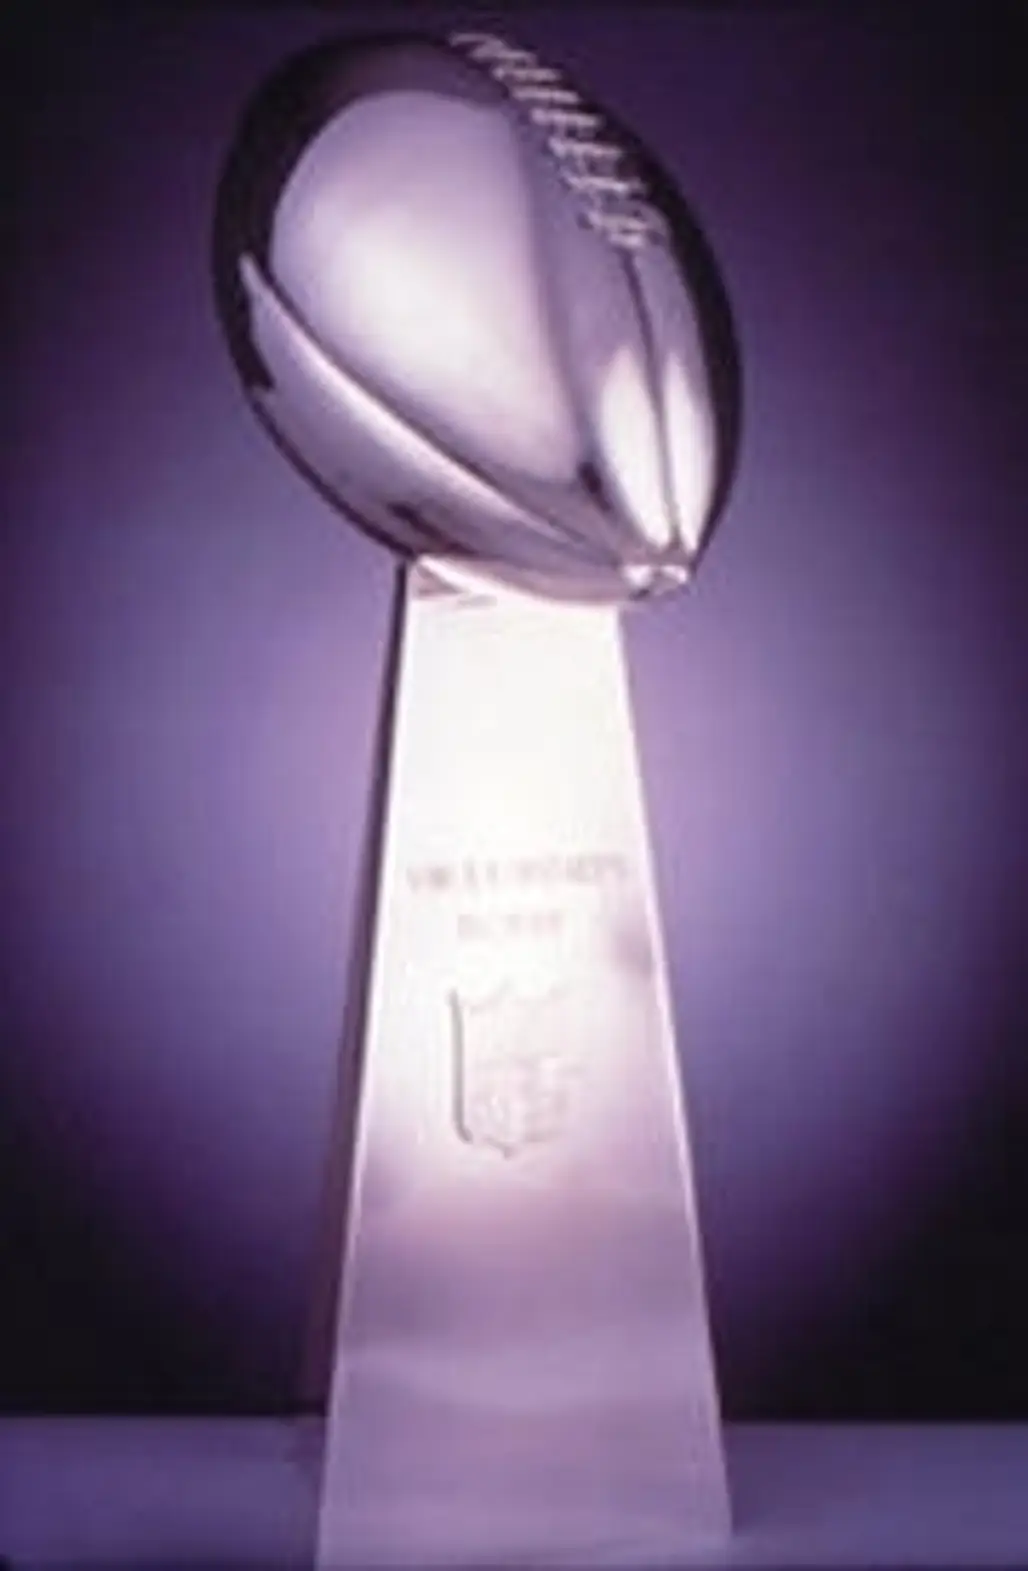 The Superbowl Trophy